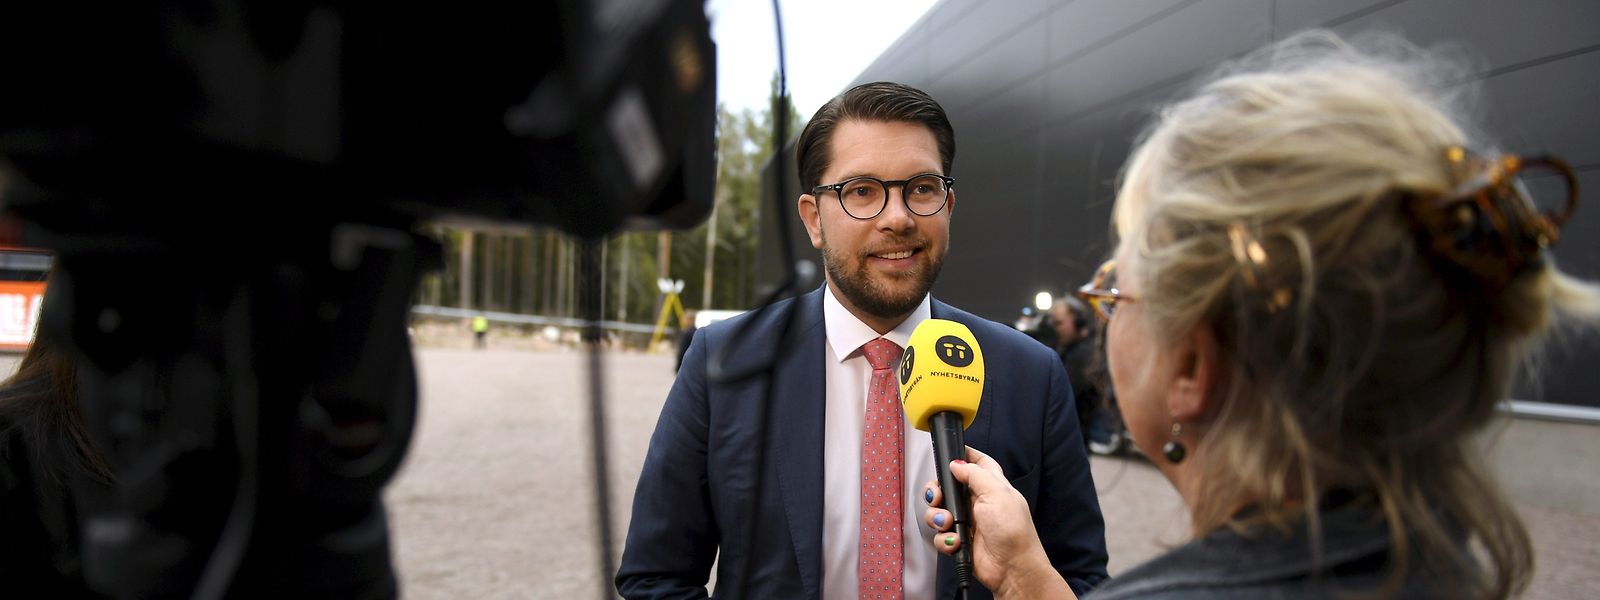 Per Jimmie Akesson, Vorsitzender der Sverigedemokraterna (Schwedische Demokraten).  7,3 Millionen Wähler wählen am 9. September 2018 in Schweden ein neues Parlament und eine neue Regierung.